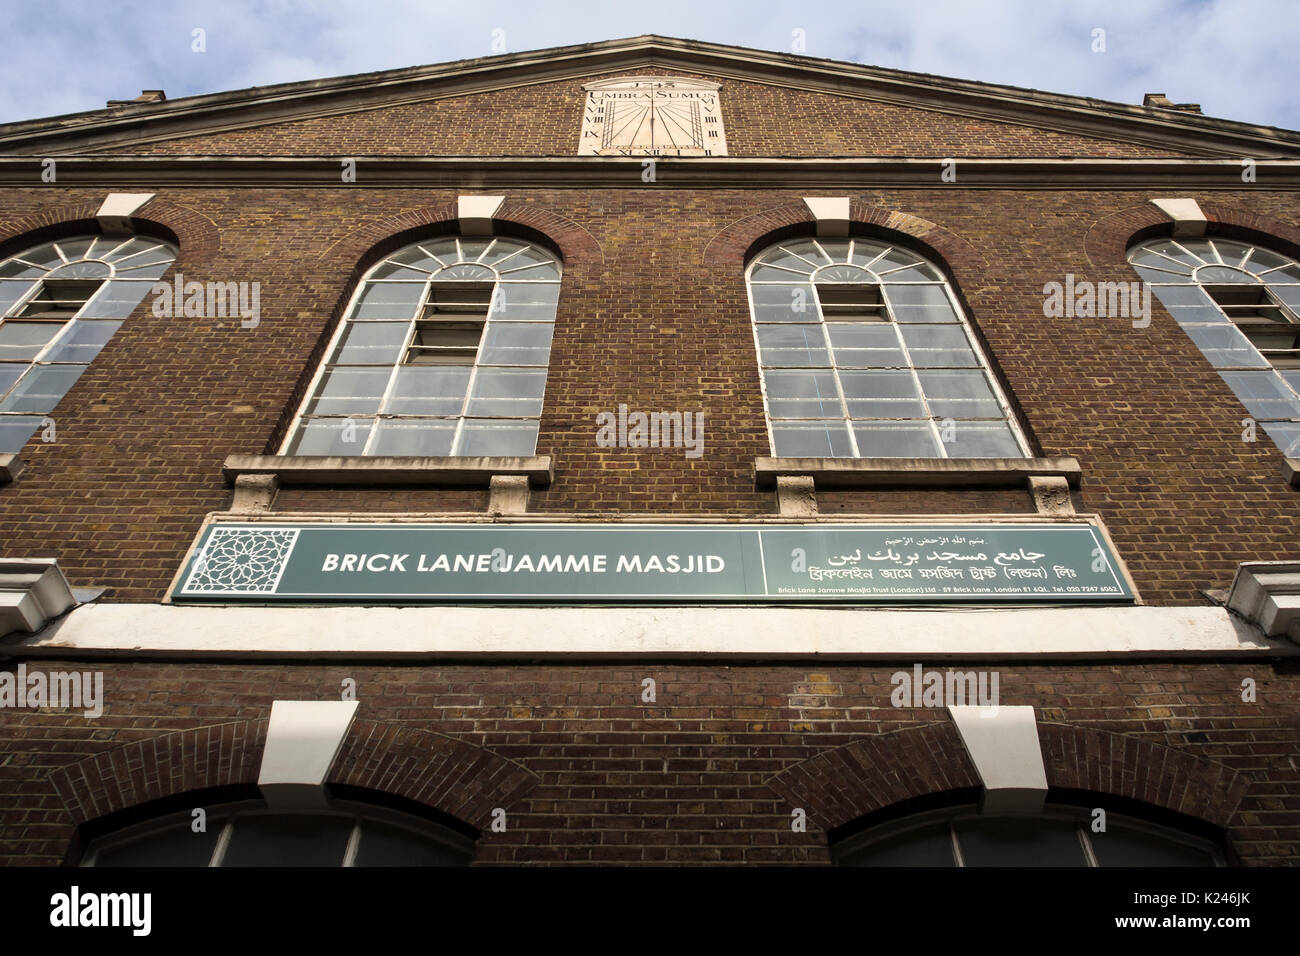 LONDRES, Royaume-Uni - 11 FÉVRIER 2015 : la mosquée Jamme Masjid, à la jonction de Fournier Street et Brick Lane Banque D'Images